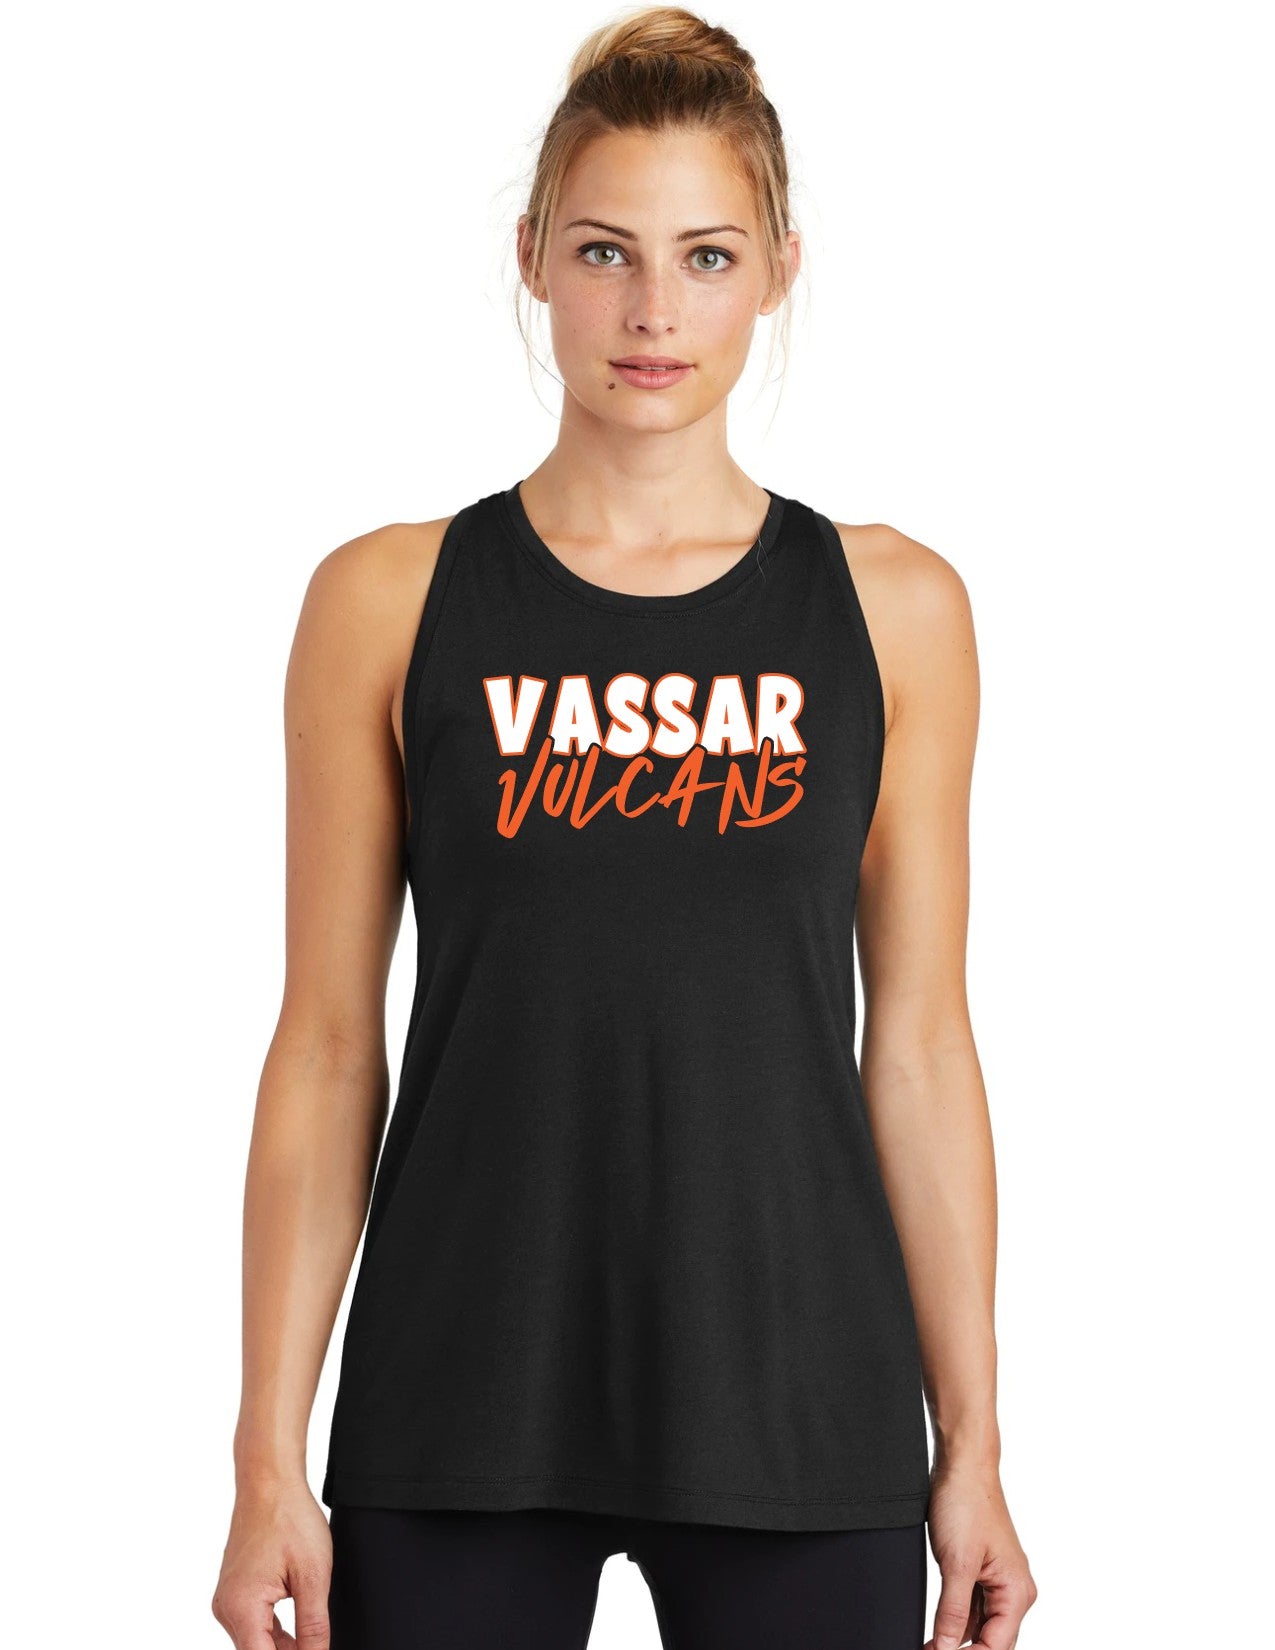 Vassar Vulcans Women's Racerback Tank Top